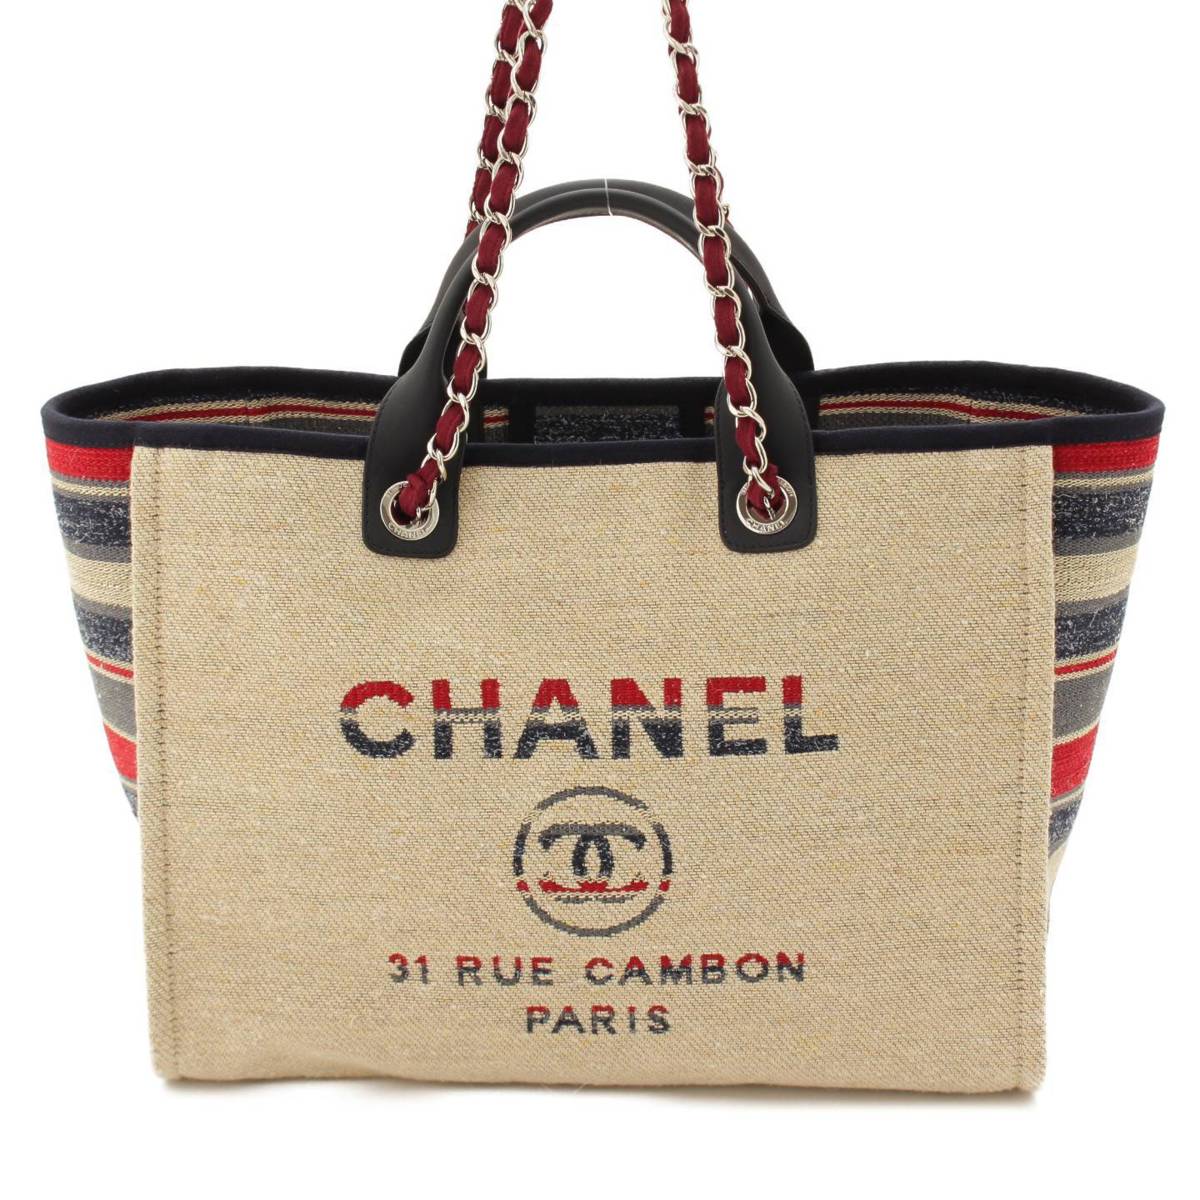 シャネル(Chanel) ドーヴィル ボーダー チェーン トートバッグ 26番台 マルチカラー